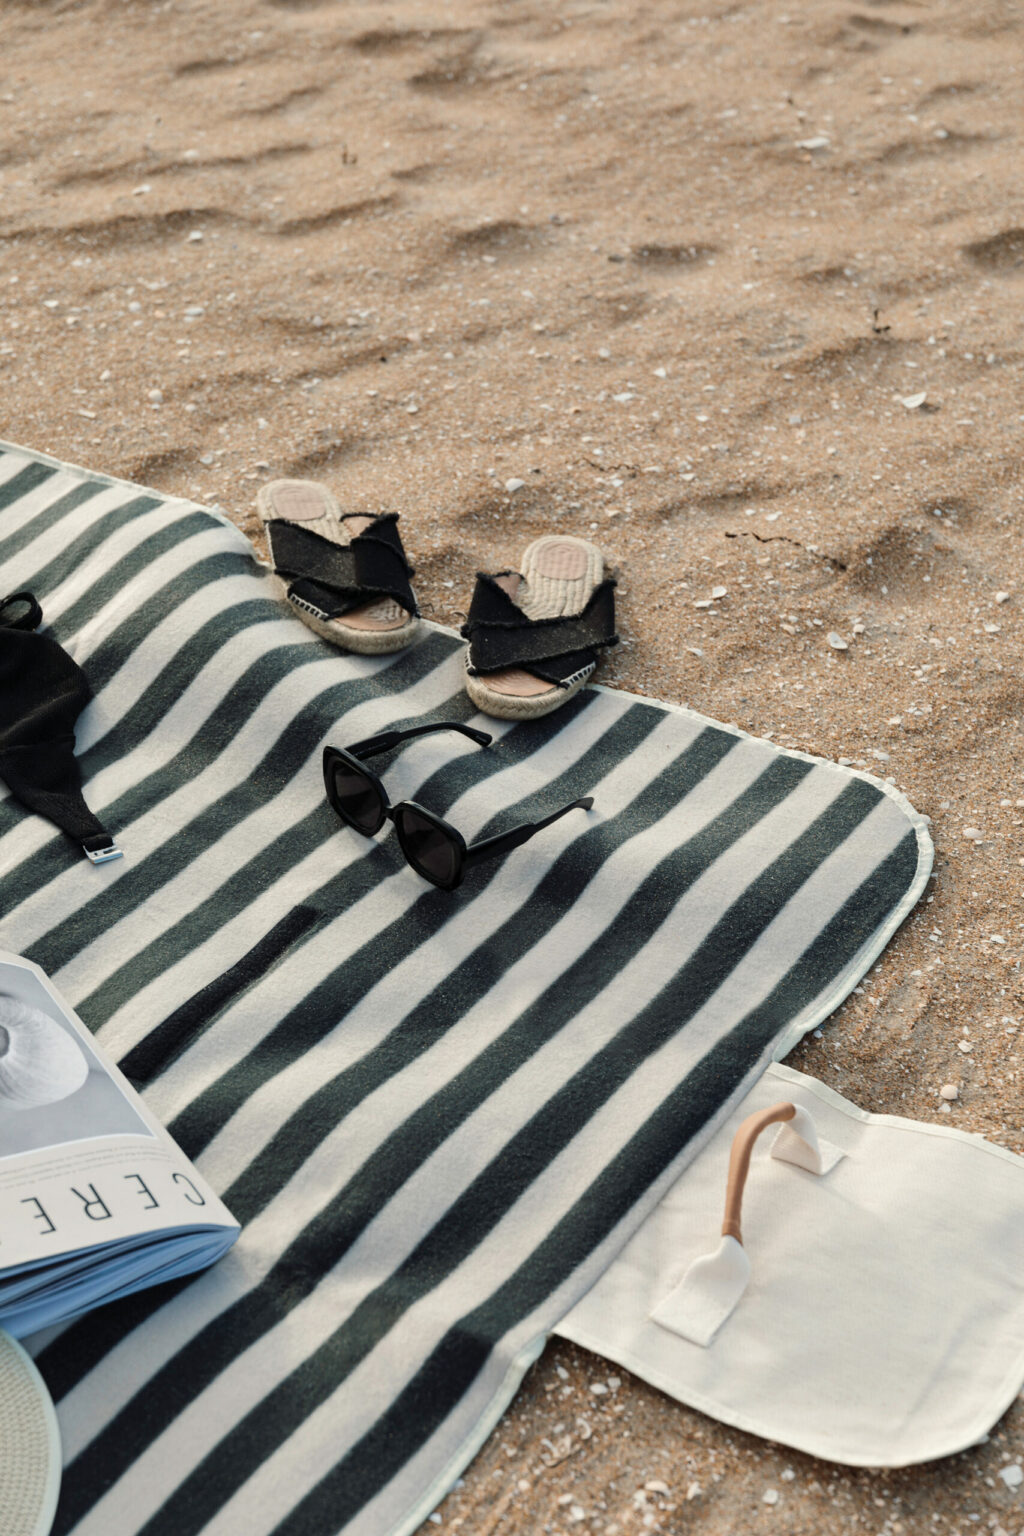 Telo da pic-nic a righe bianche e nere steso sulla sabbia con ciabatte e occhiali da sole appoggiati